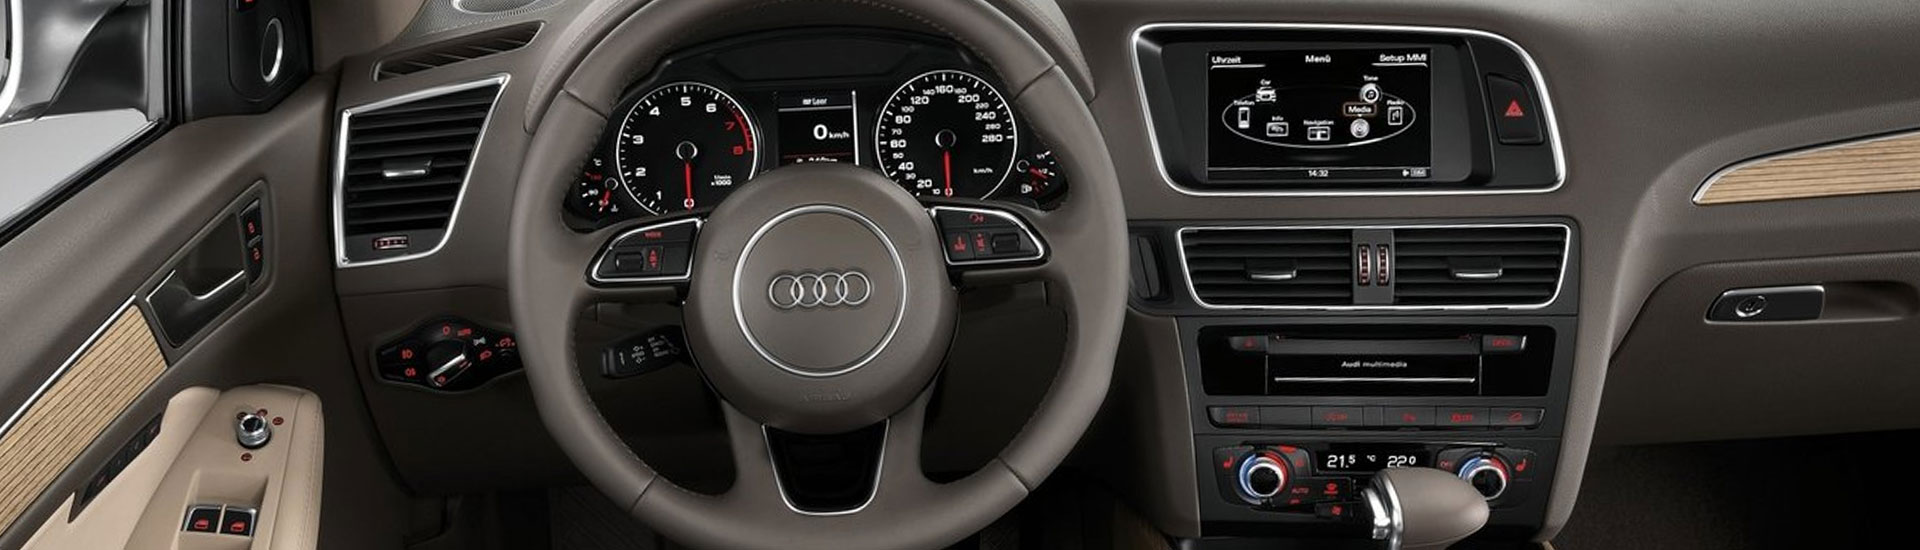 Audi Q5 Custom Dash Kits